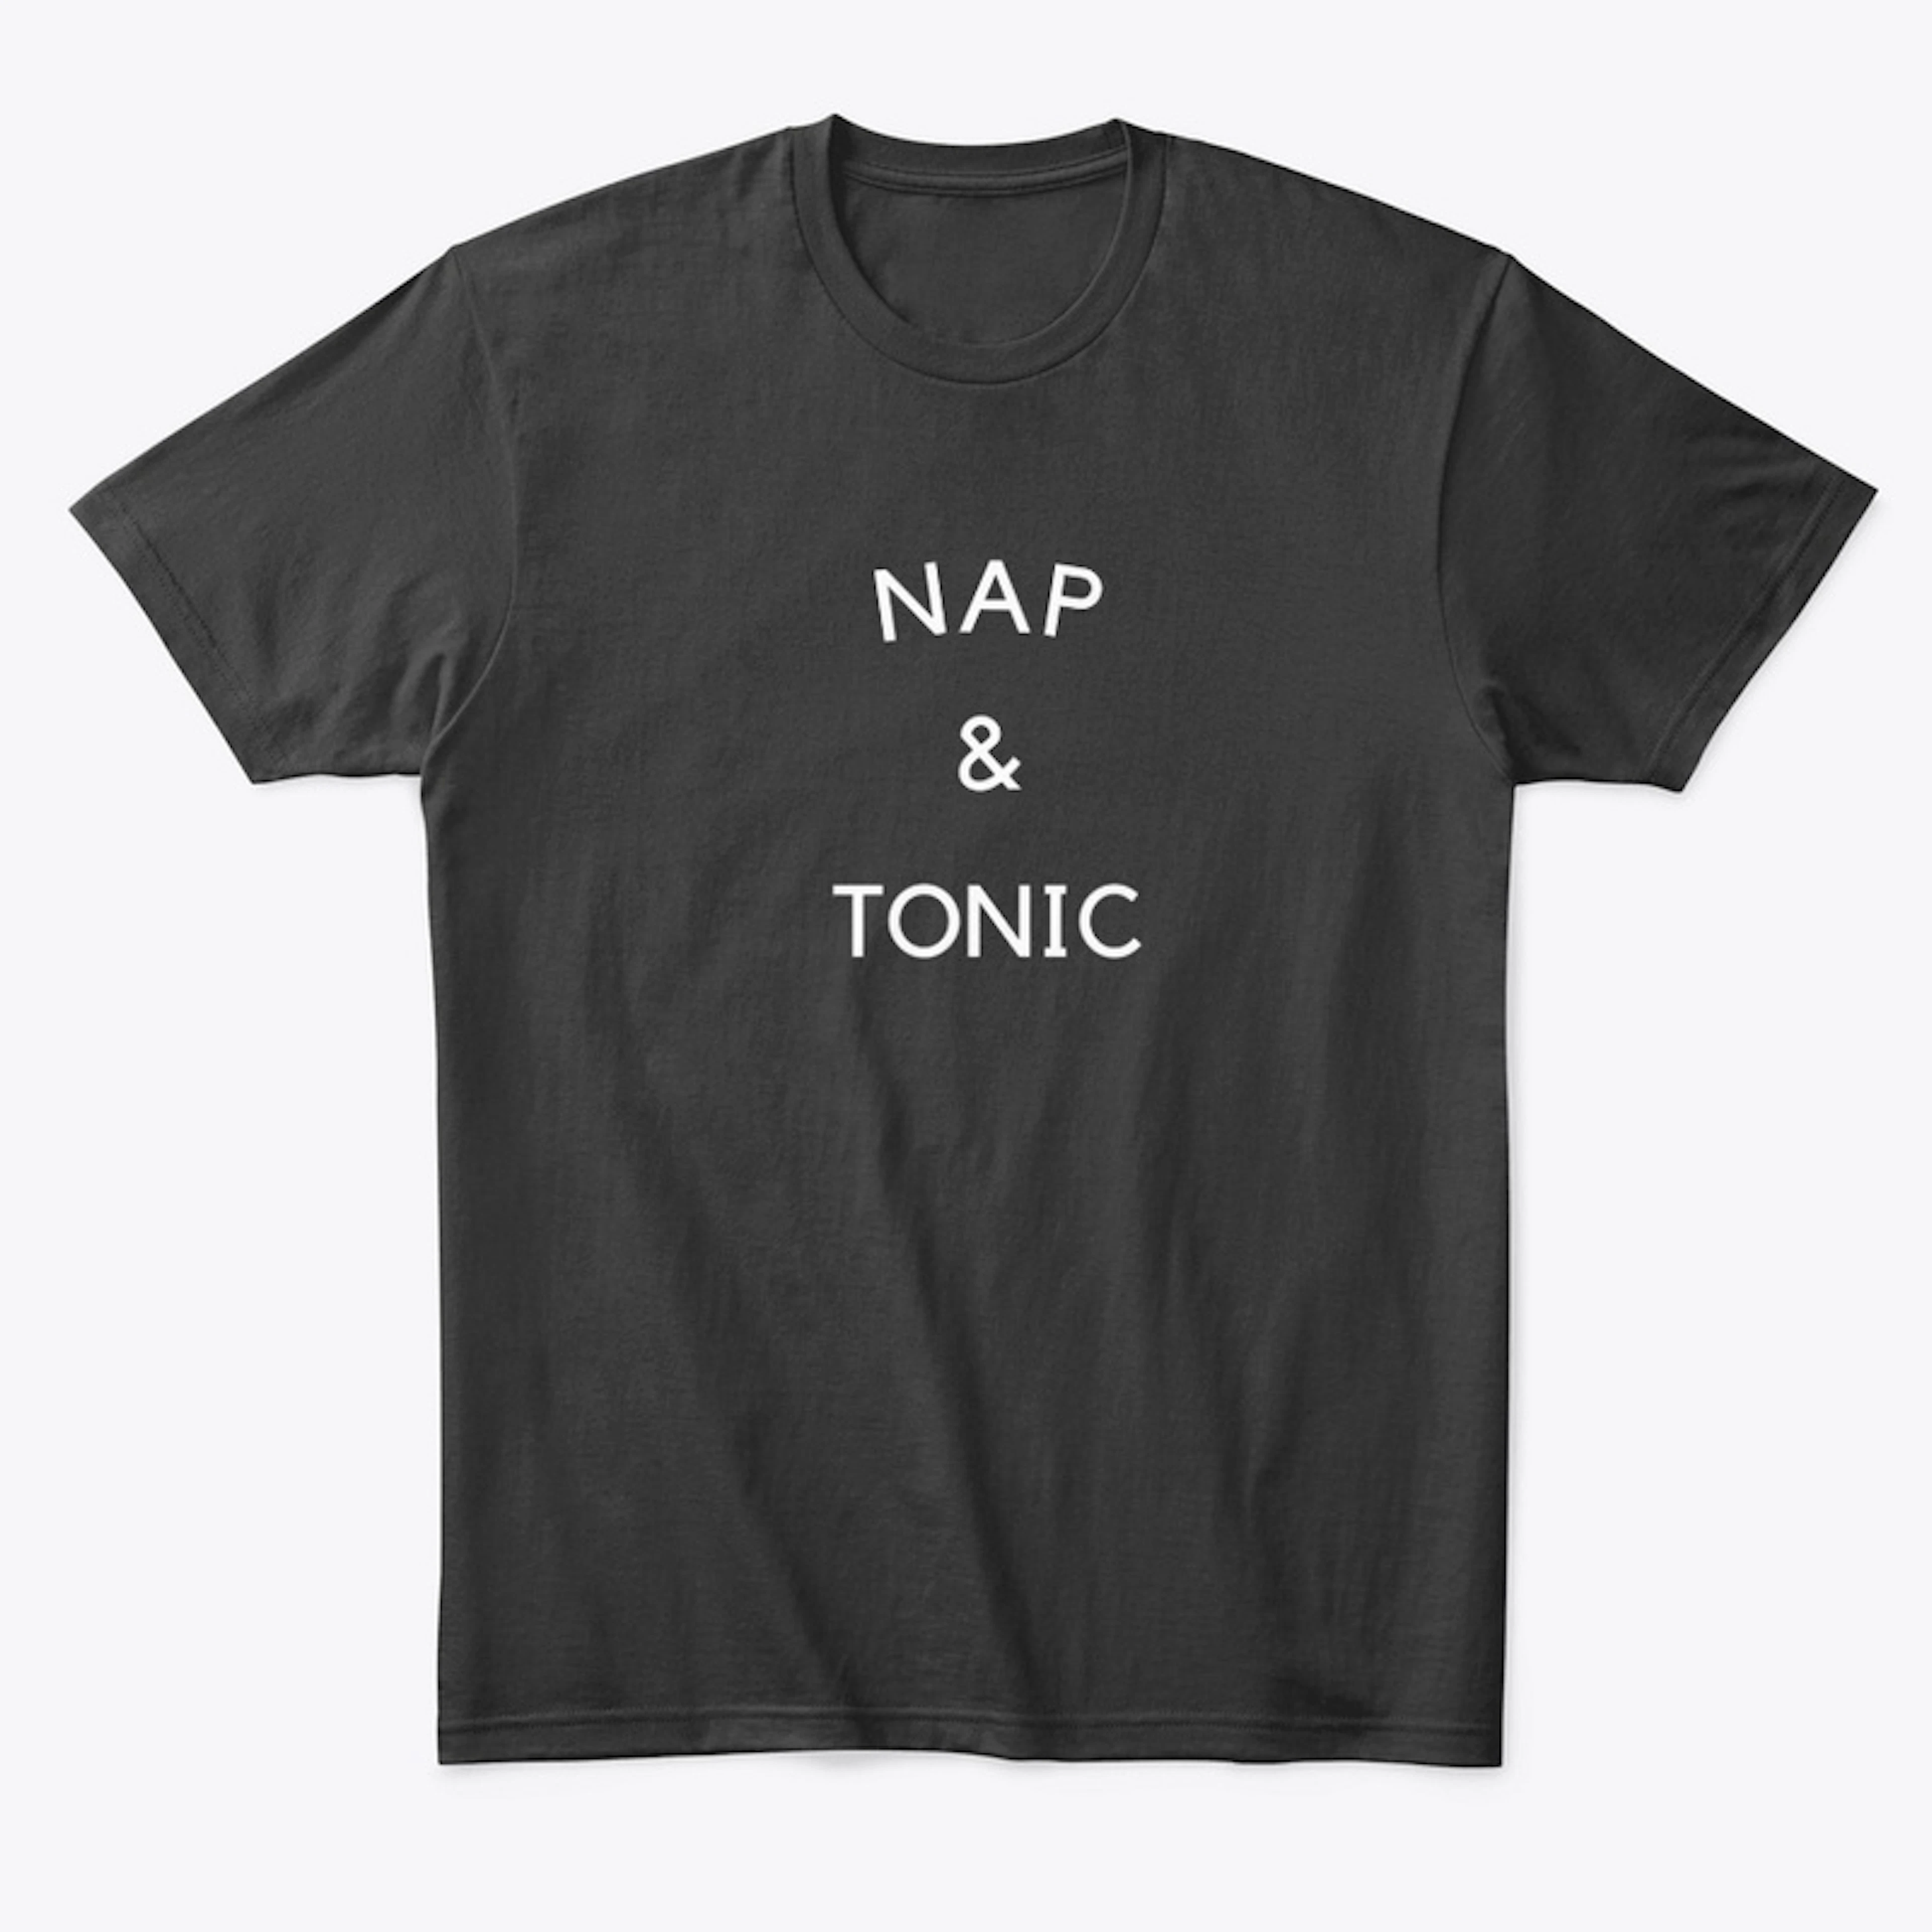 Nap & Tonic